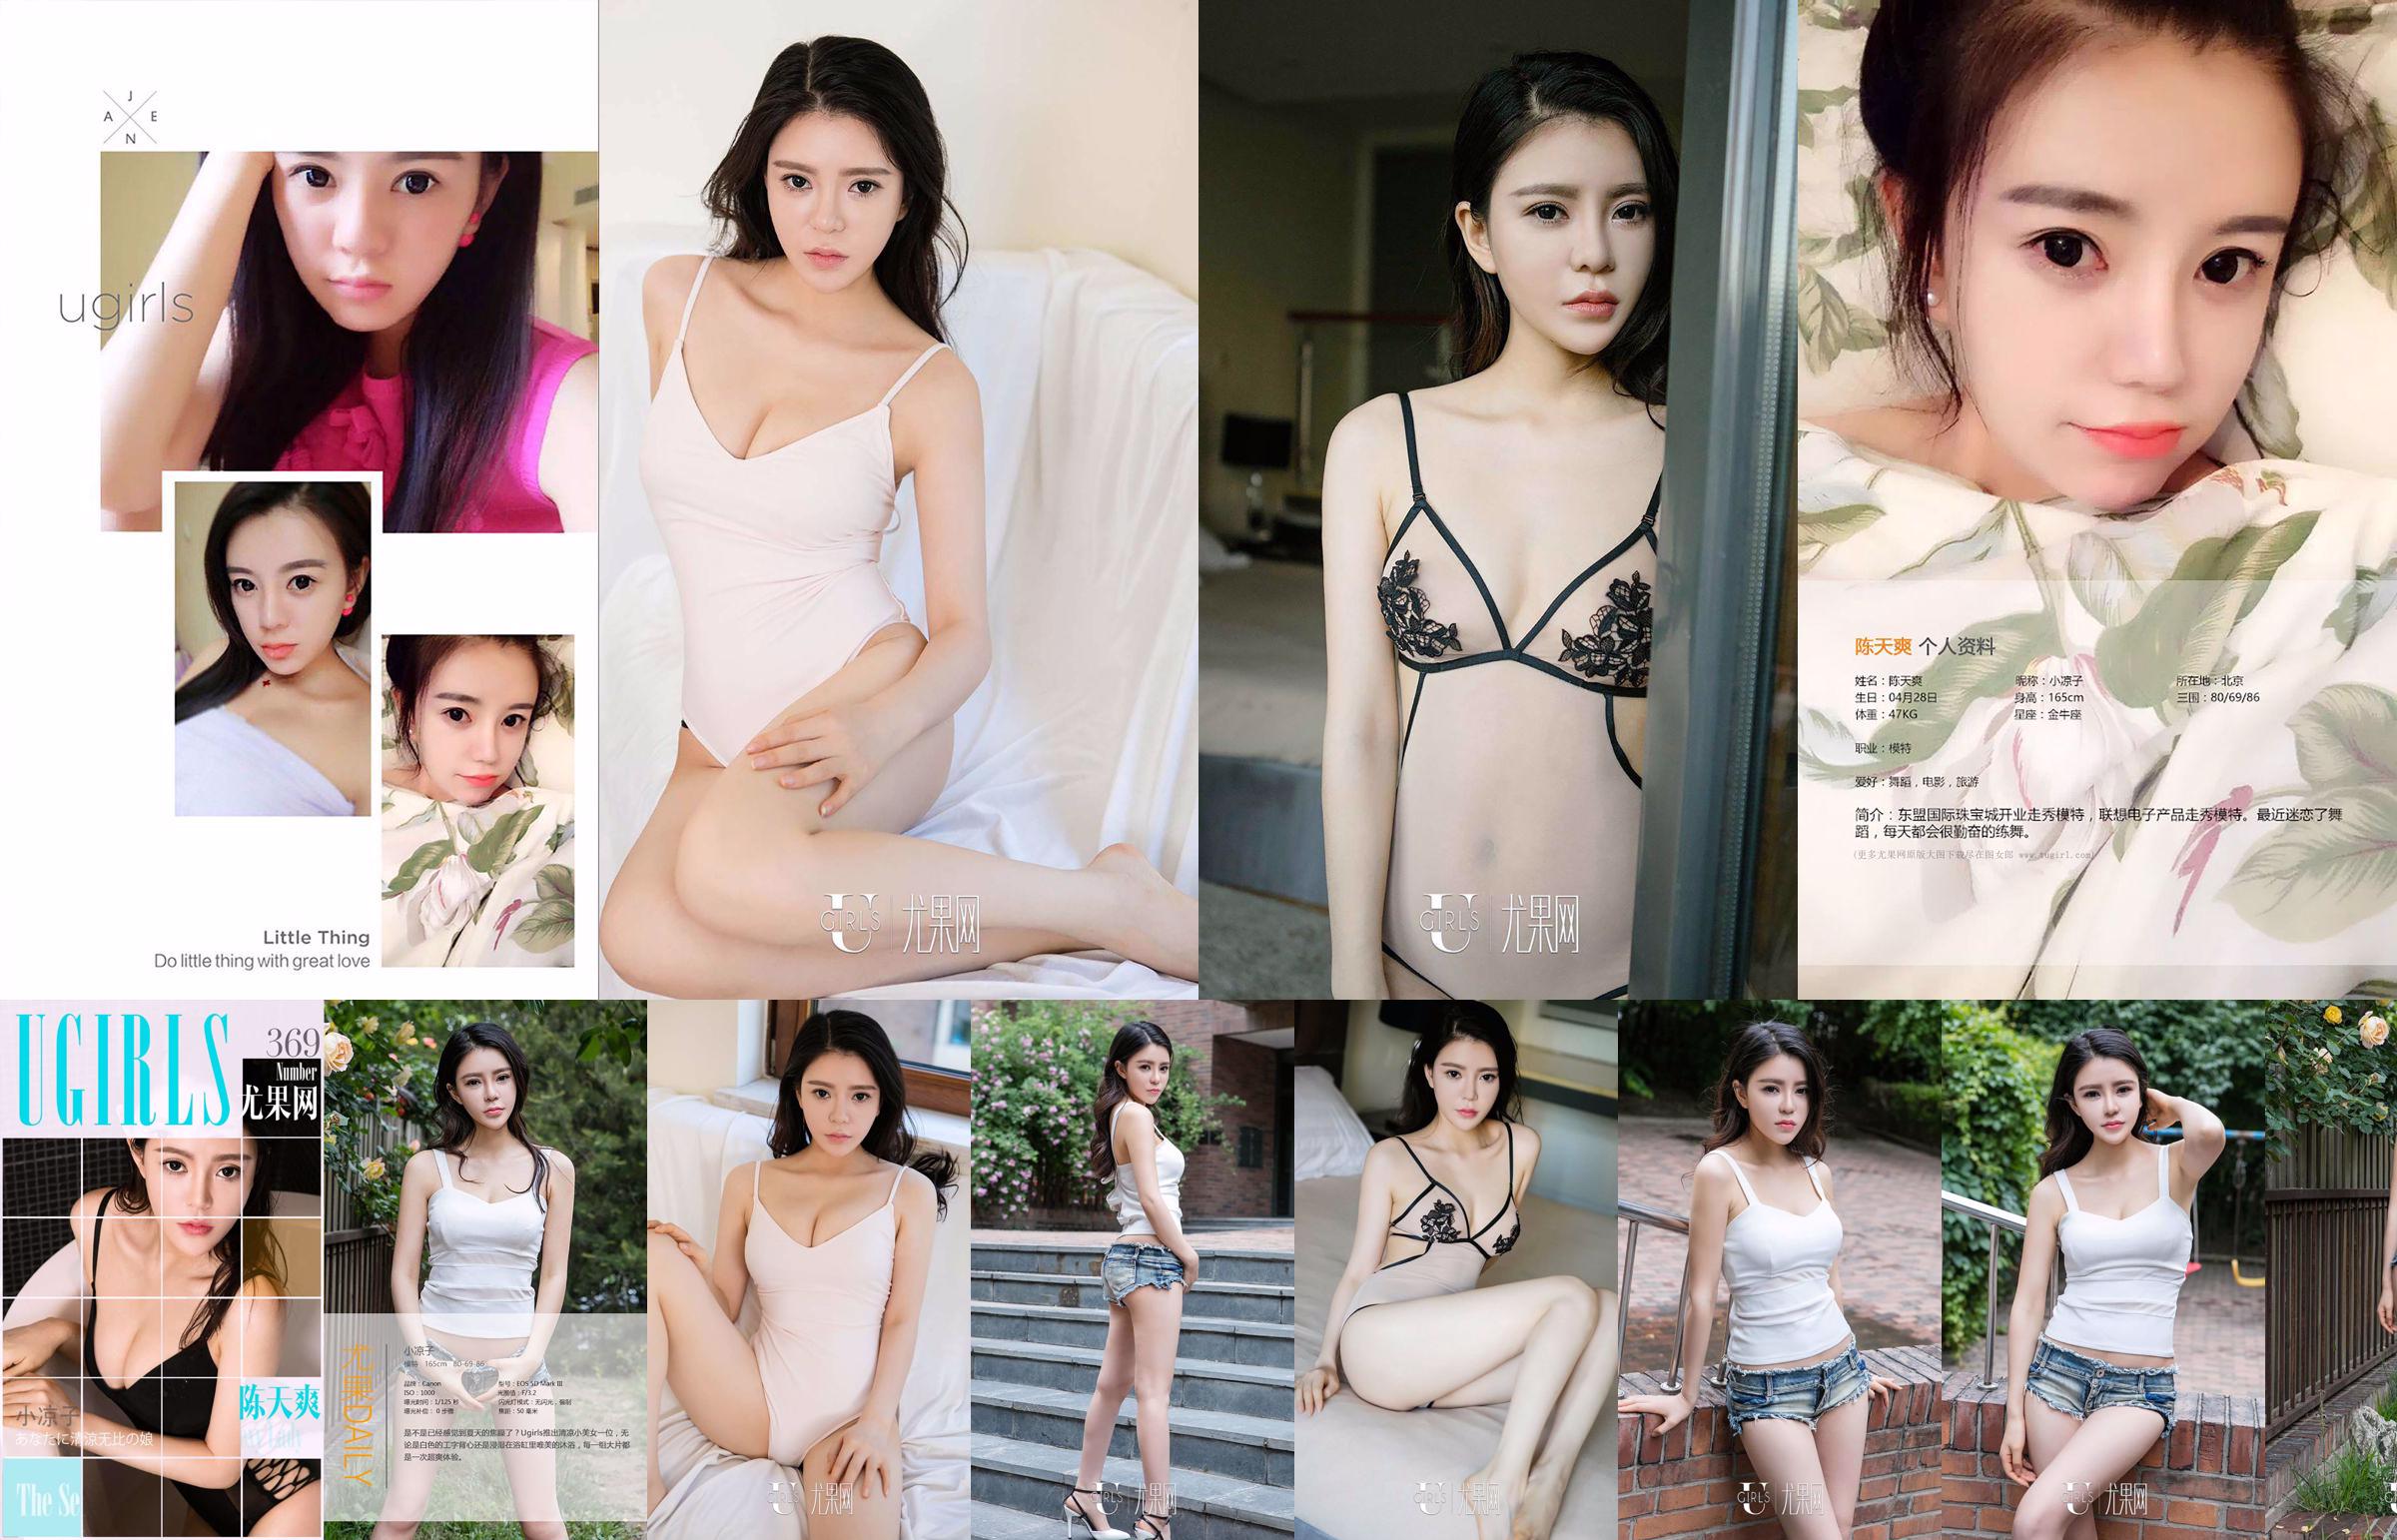 Chen Tianshuang "Looks Beautiful" [爱 优 物 Ugirls] No.395 No.07a4ac Página 3